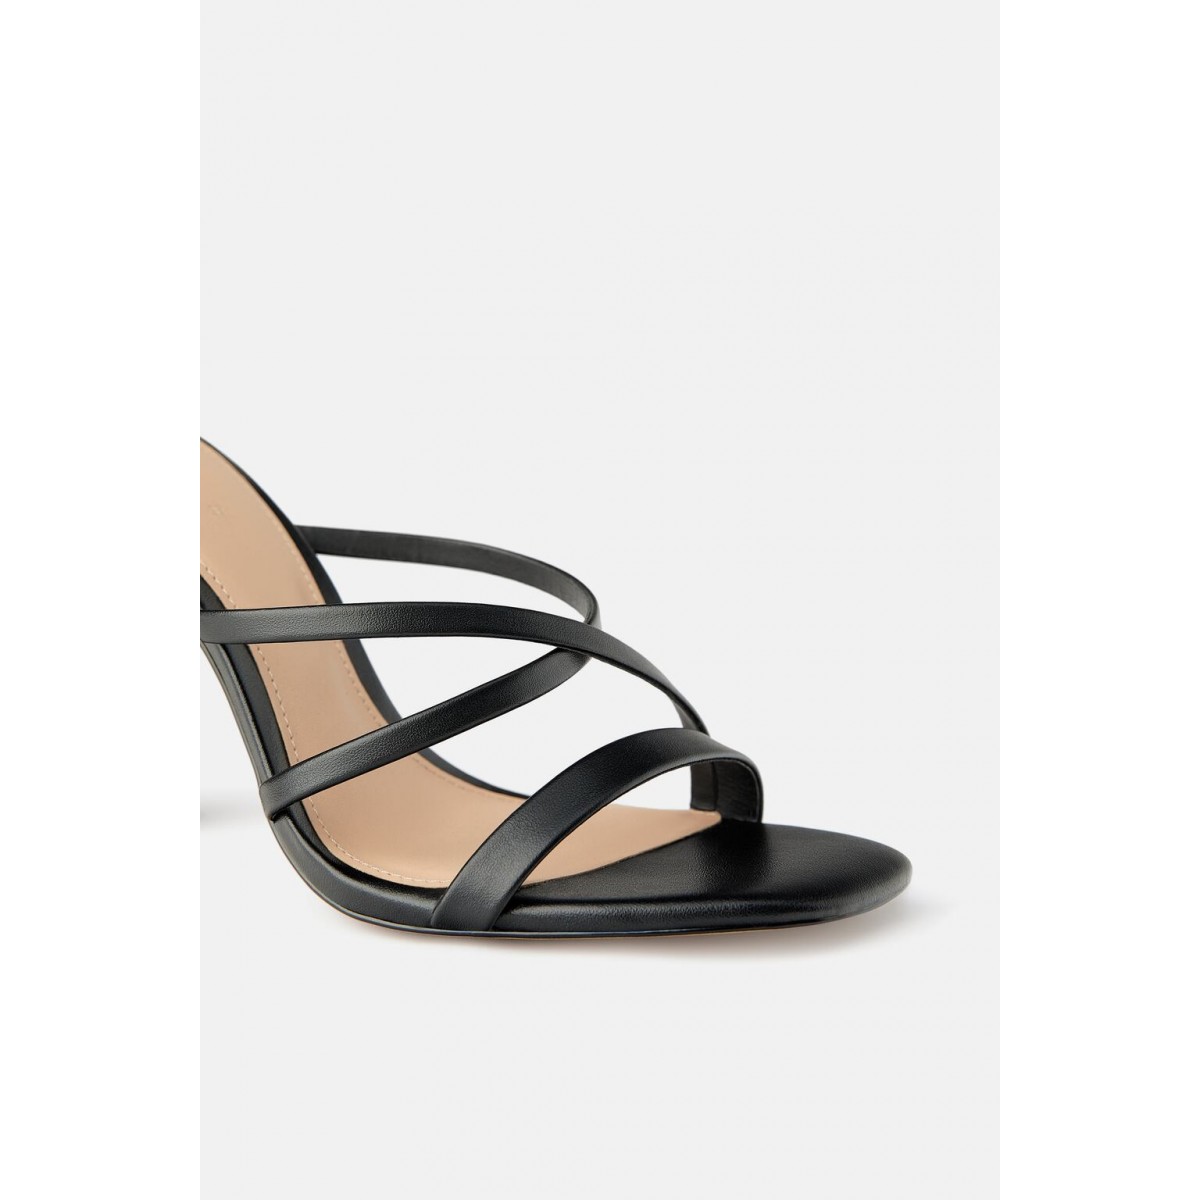 Zara Sandals With Contrast Round Heel